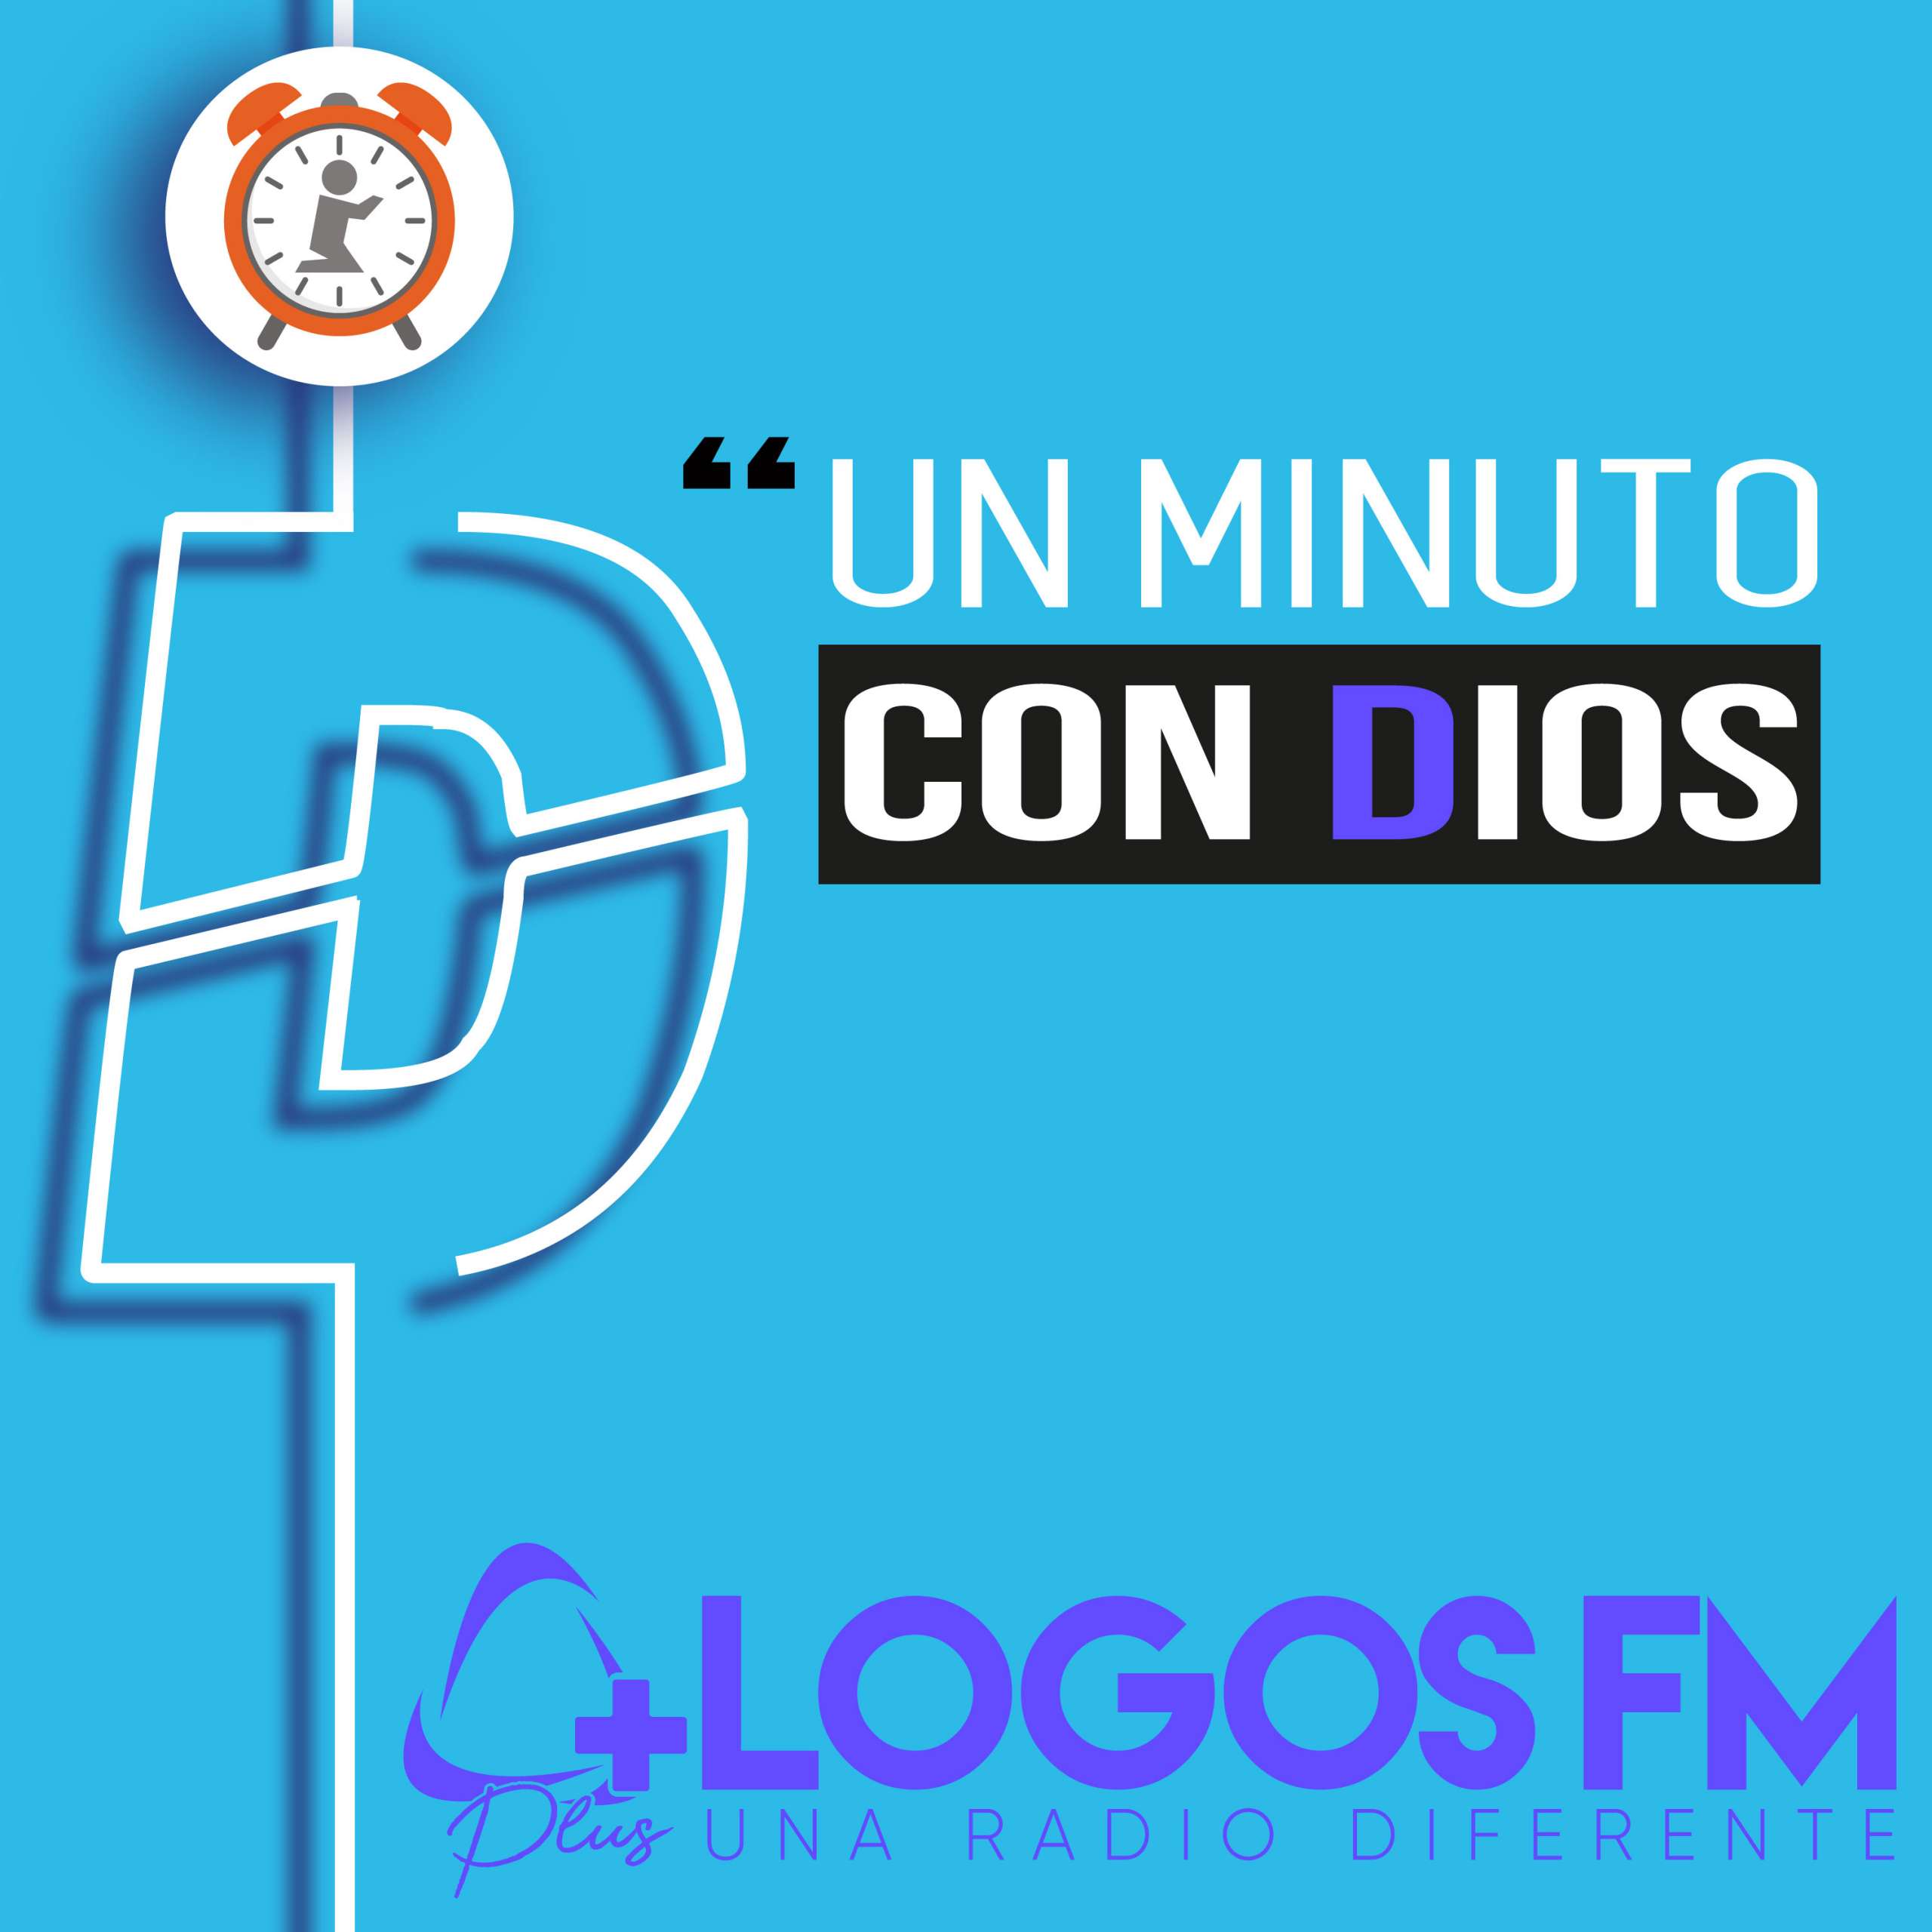 Un minuto con Dios - Episodio 362 - Oniss García